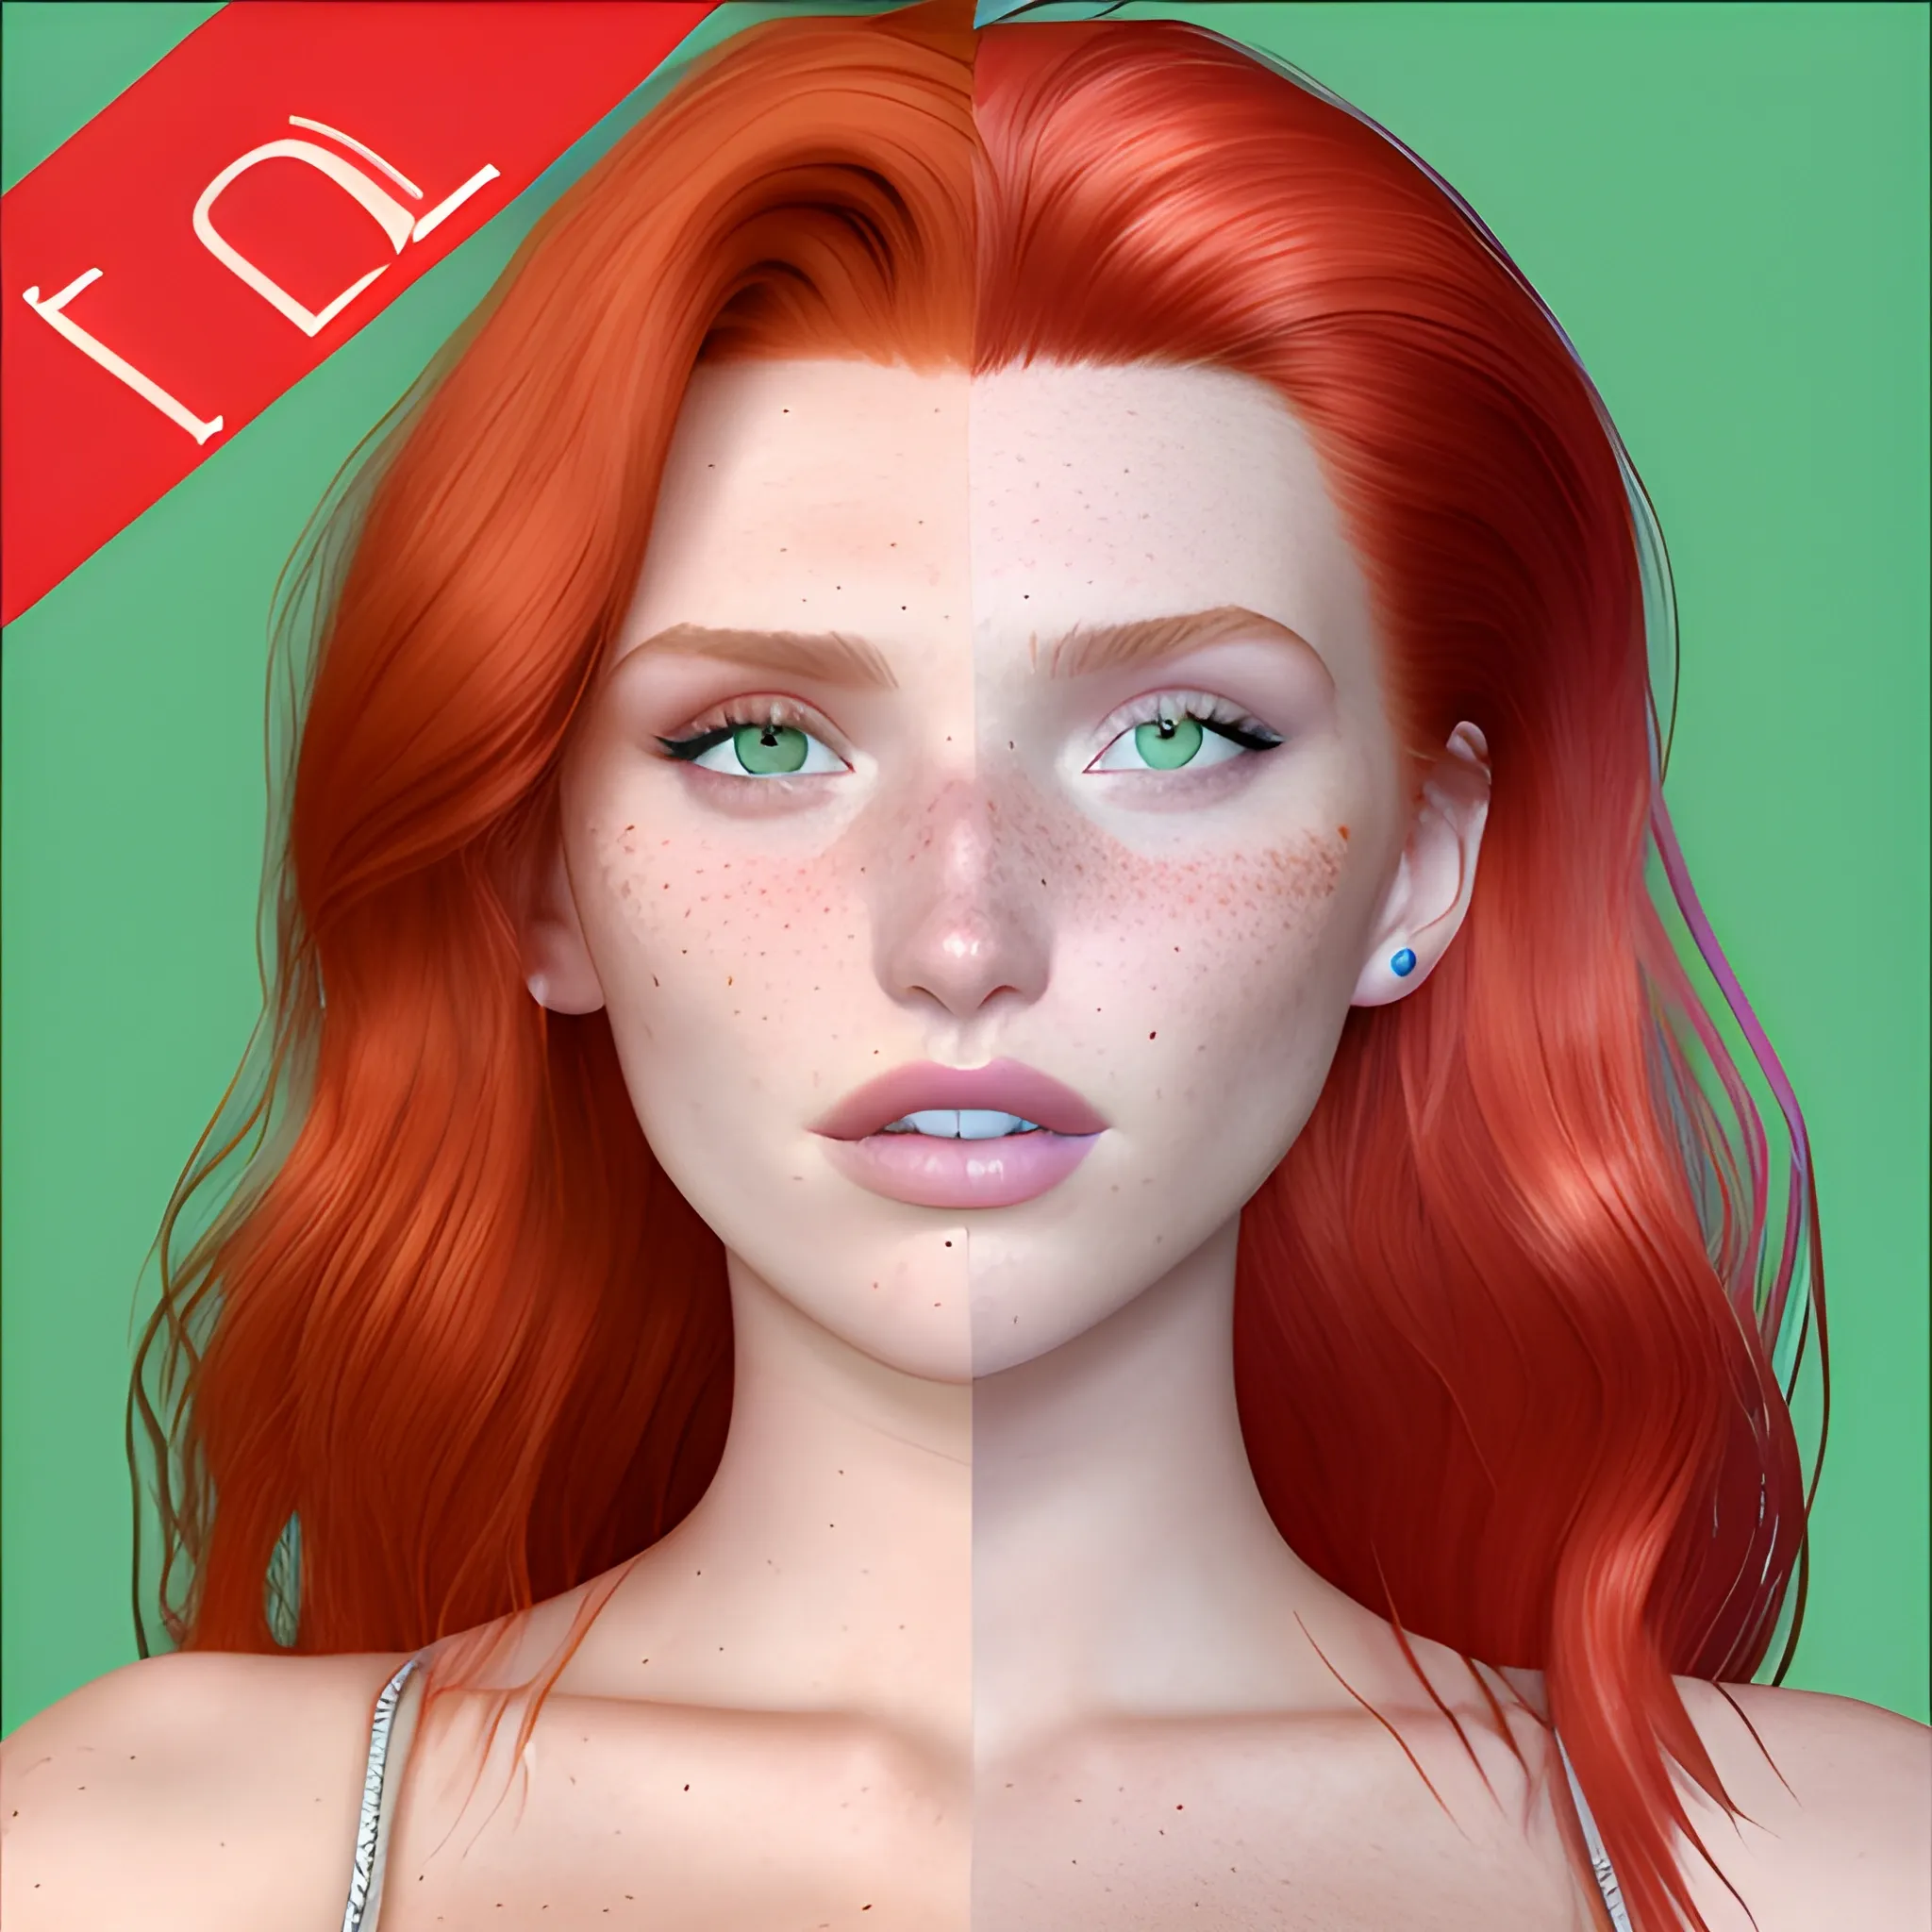 Bella Thorne / Elsa Hosk face morph, 3D, red hair, green eyes, freckles, 90's mall background